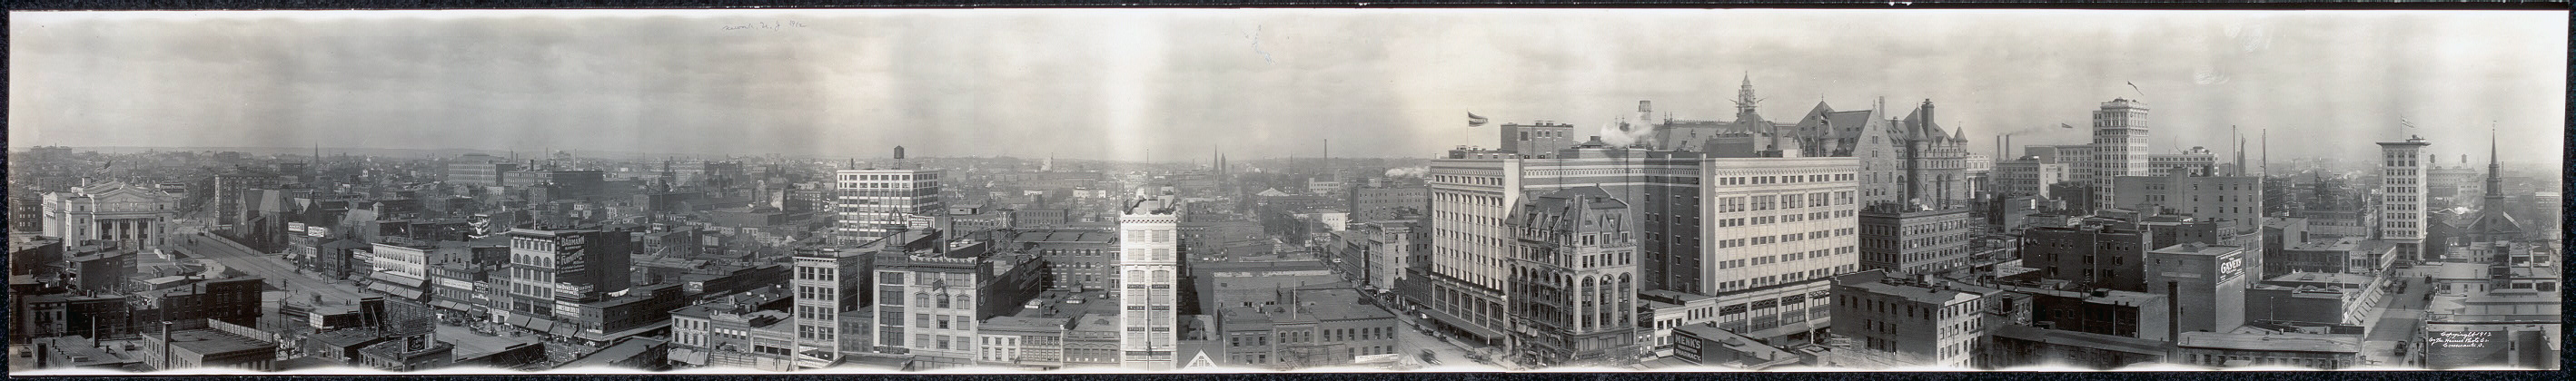 Fotografía en blanco y negro de una vista panorámica de la ciudad de Newark, Nueva Jersey en 1912.